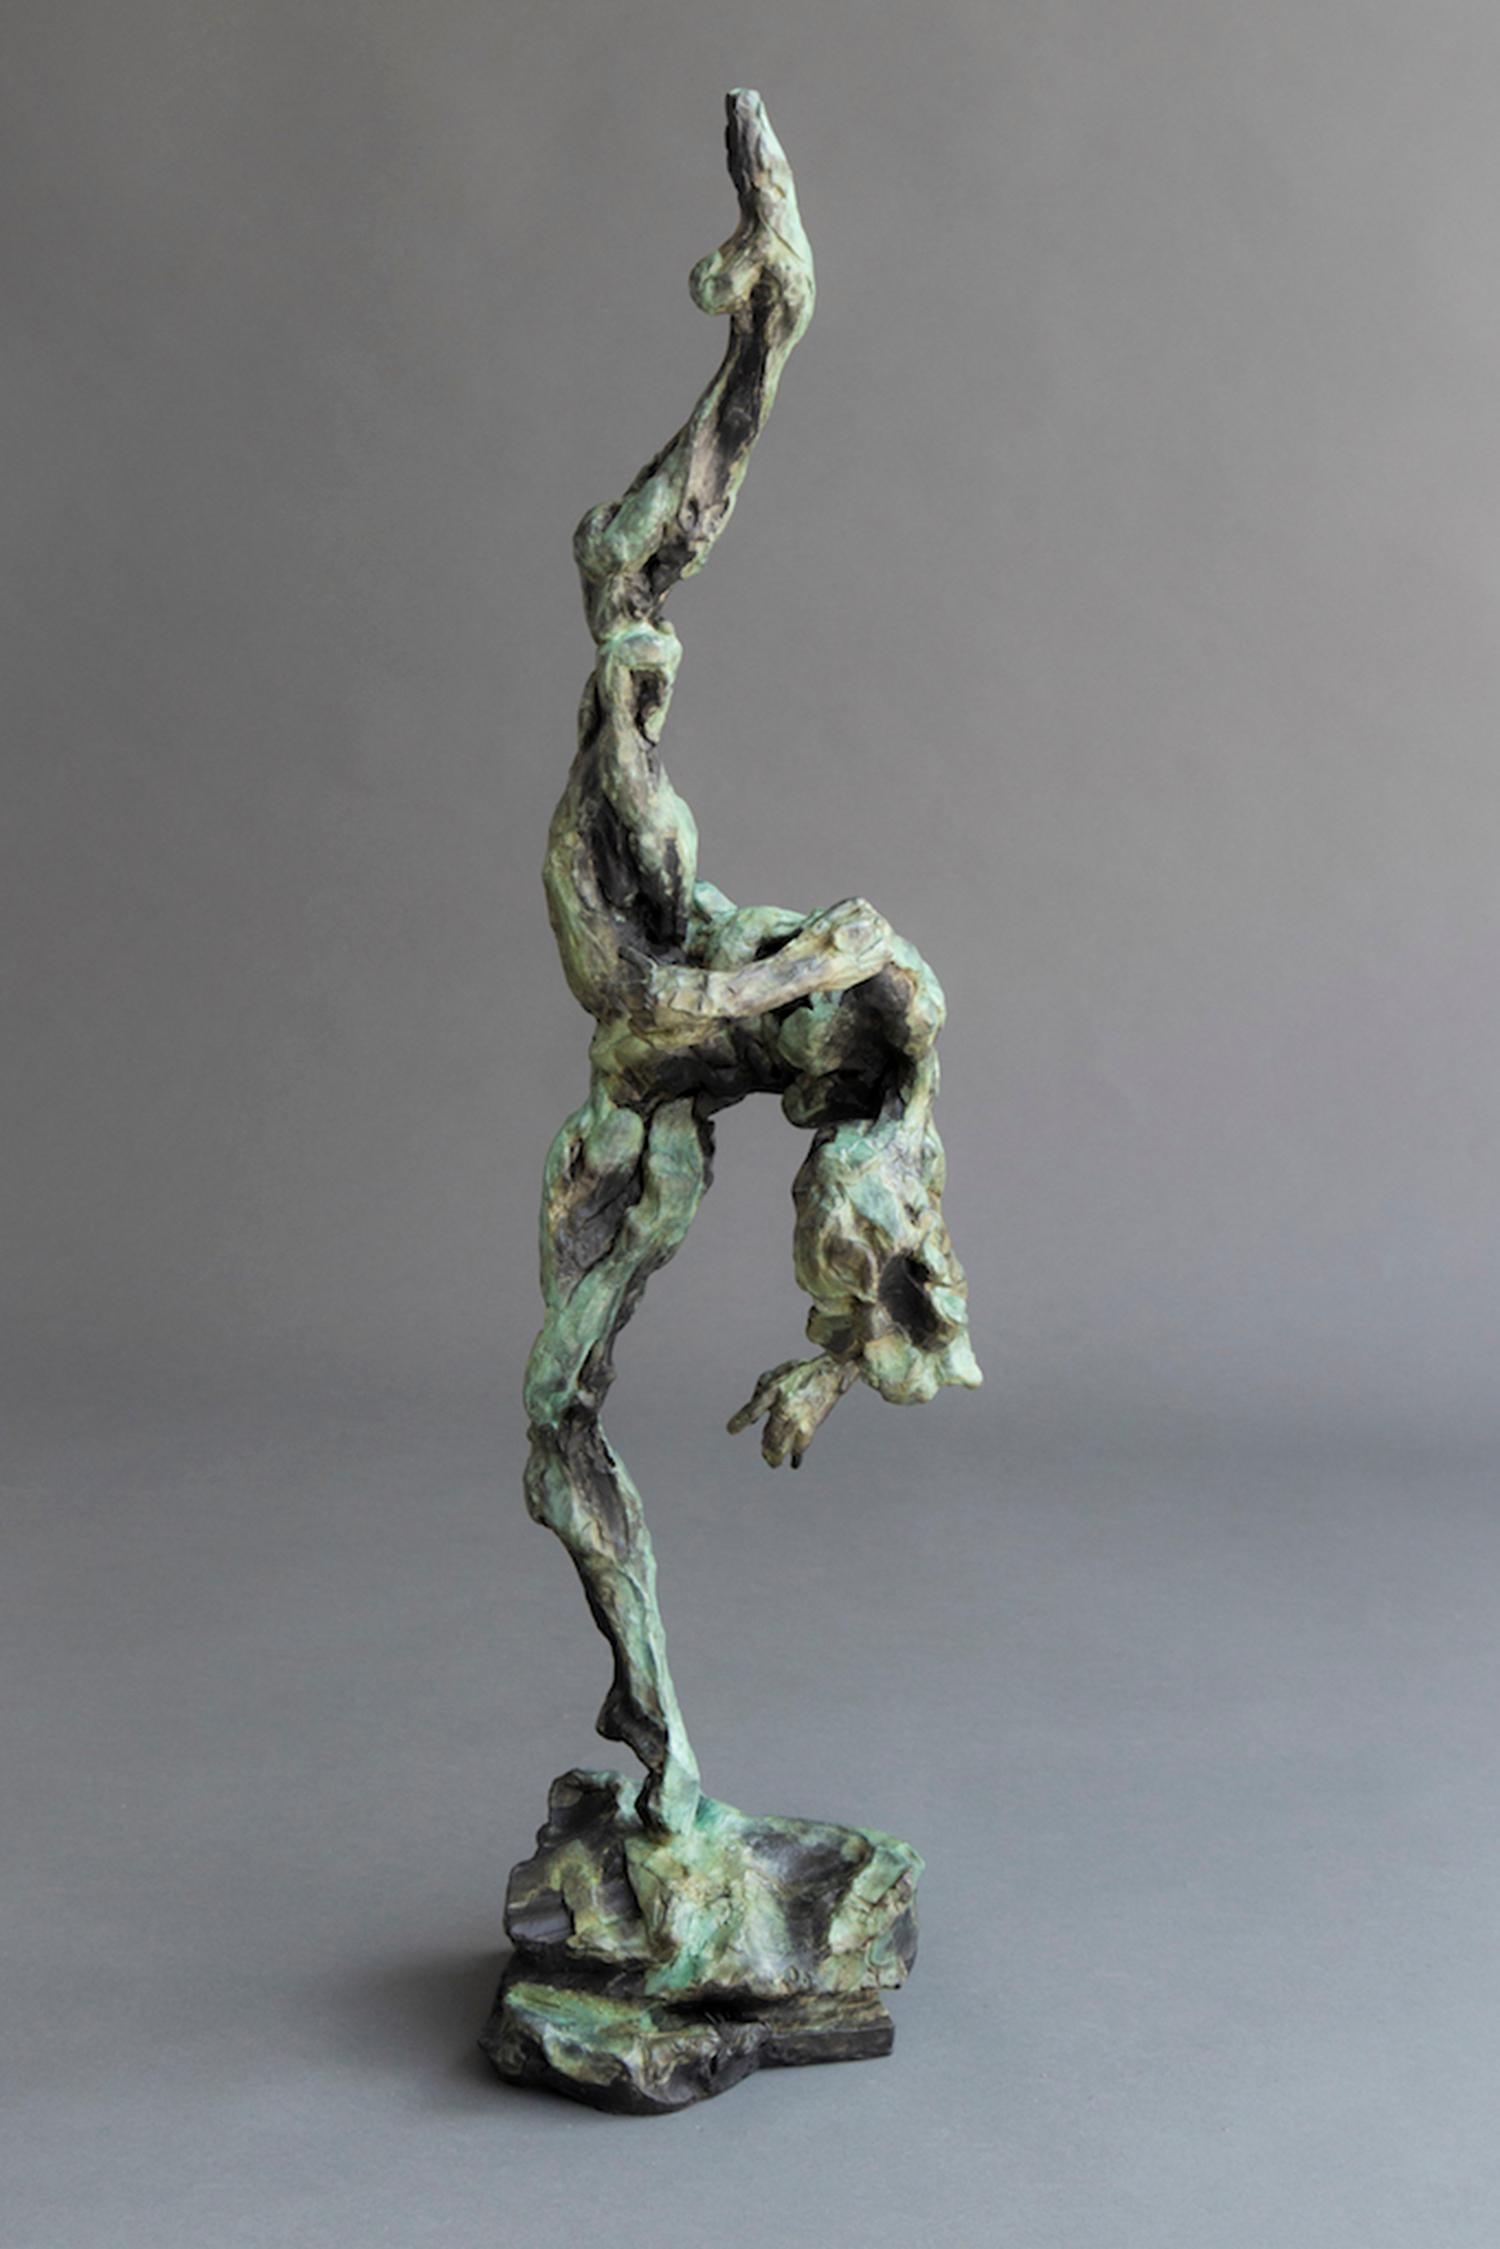 Die Bronzestatuette einer nackten Tänzerin mit spitzen Zehen, dünnen, ausgestreckten Beinen und gequältem Oberkörper wurde in rascher Folge mit Gesten geschaffen, die an Abstraktion grenzen. Der moderne und dynamische Formalismus, der vom Realismus